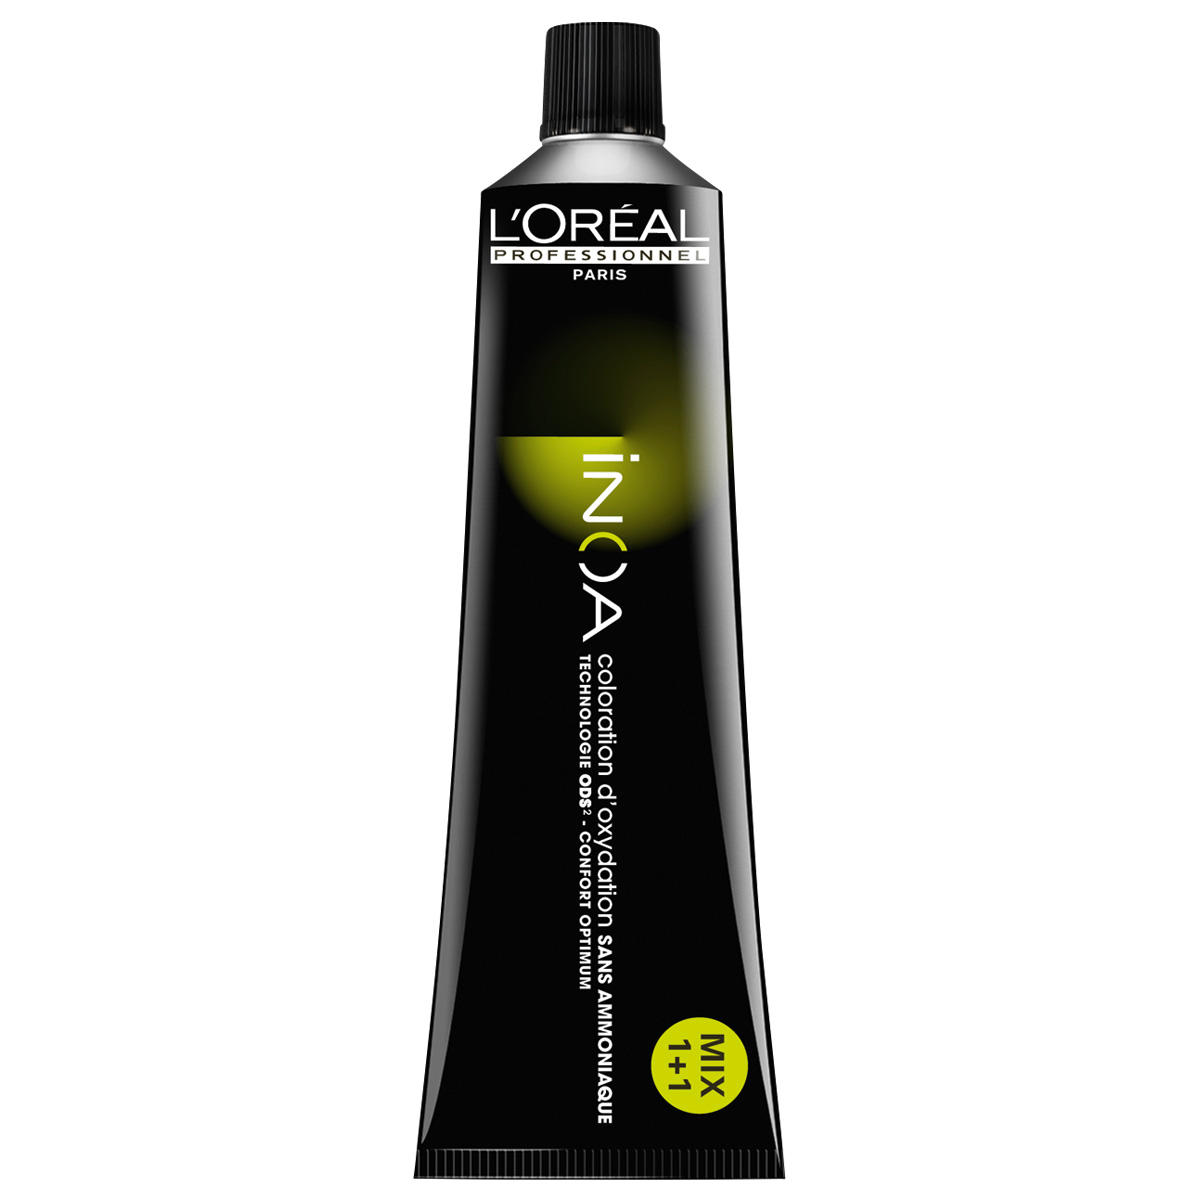 L'Oréal Professionnel Paris Coloration 8,34 Biondo chiaro oro rame, tubo 60 ml